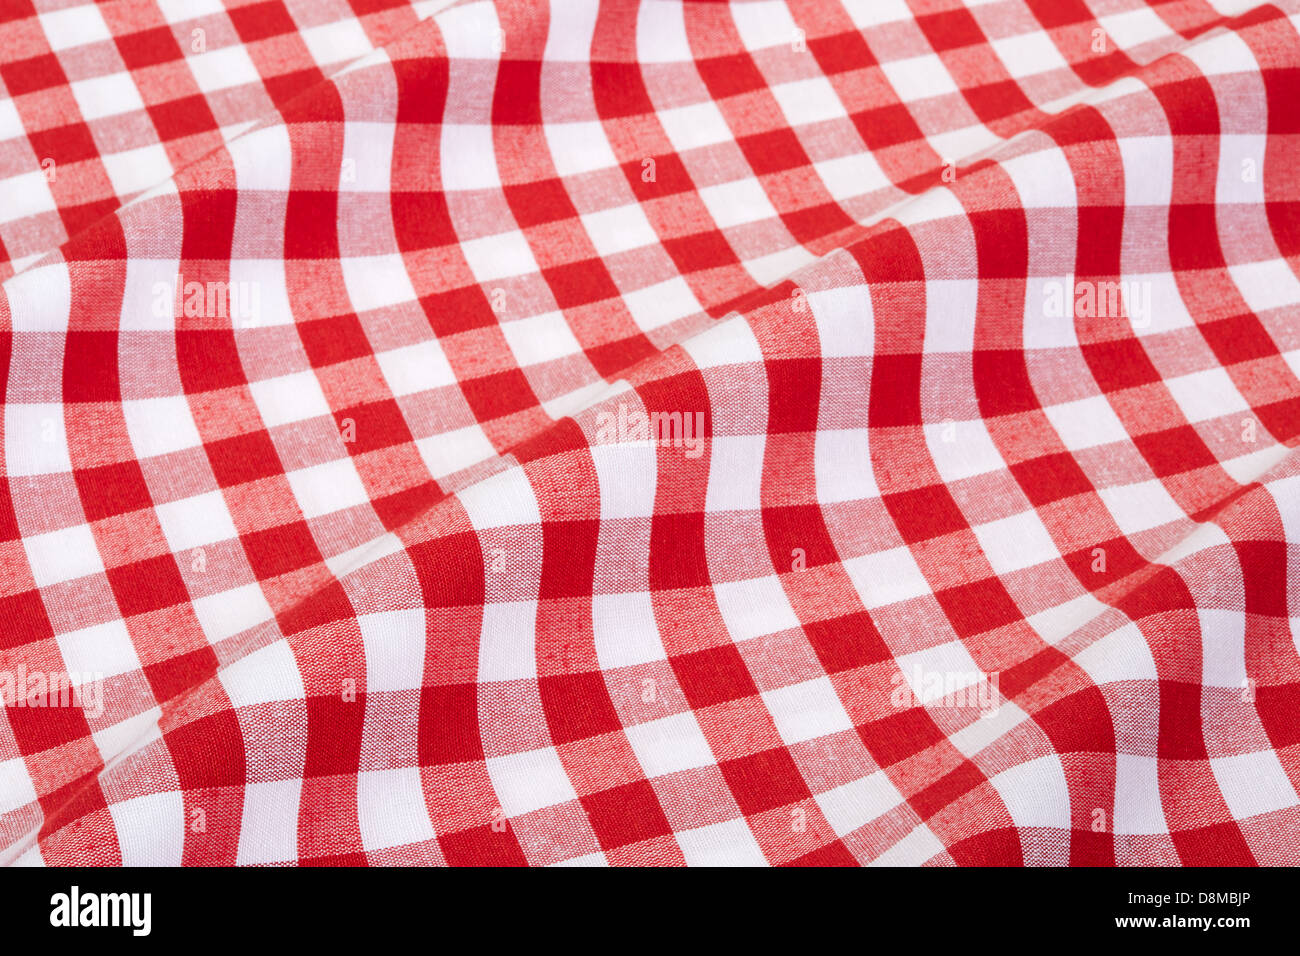 Tischdecke rot-weiß karierte wellig Textur Hintergrund Stockfoto